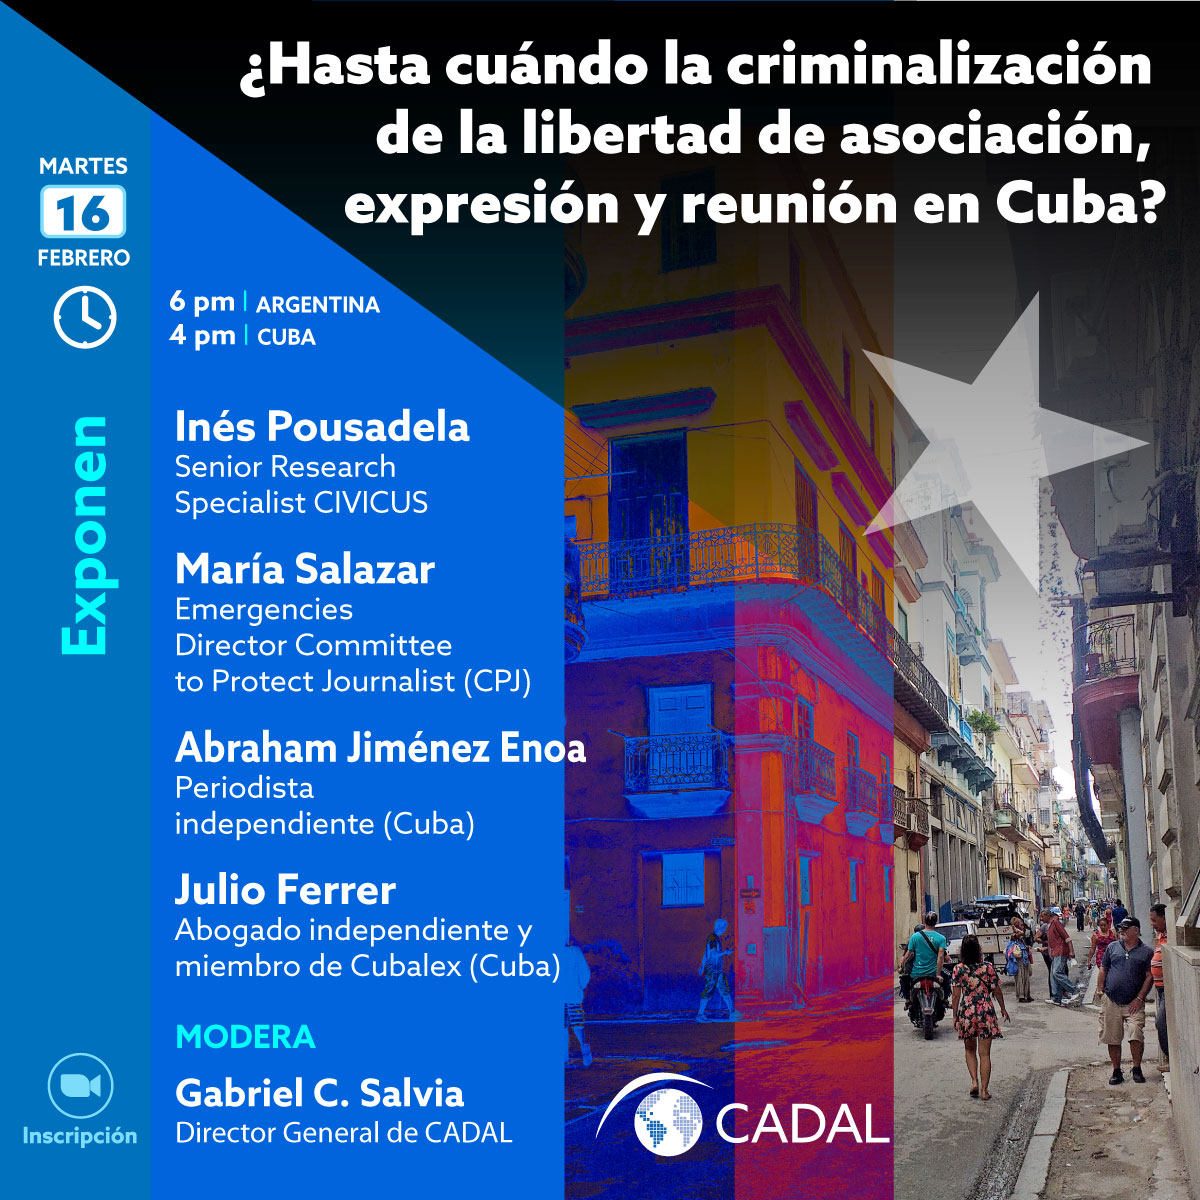 ¿Hasta cuándo la criminalización de la libertad de asociación, expresión y reunión en Cuba?